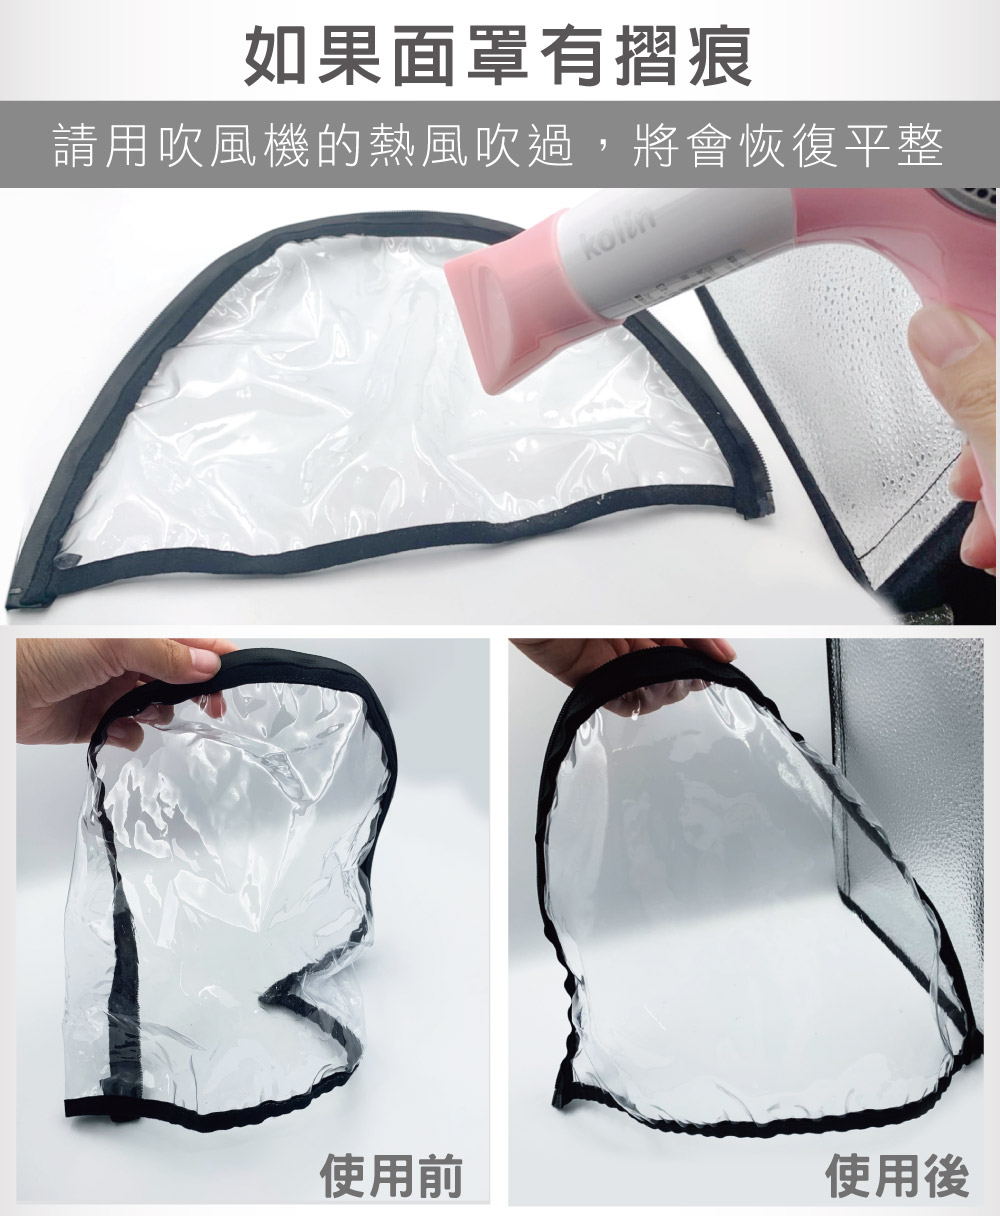       【SK】銀銅鈦極減菌防護衣(台灣製造/減菌率99.9%)